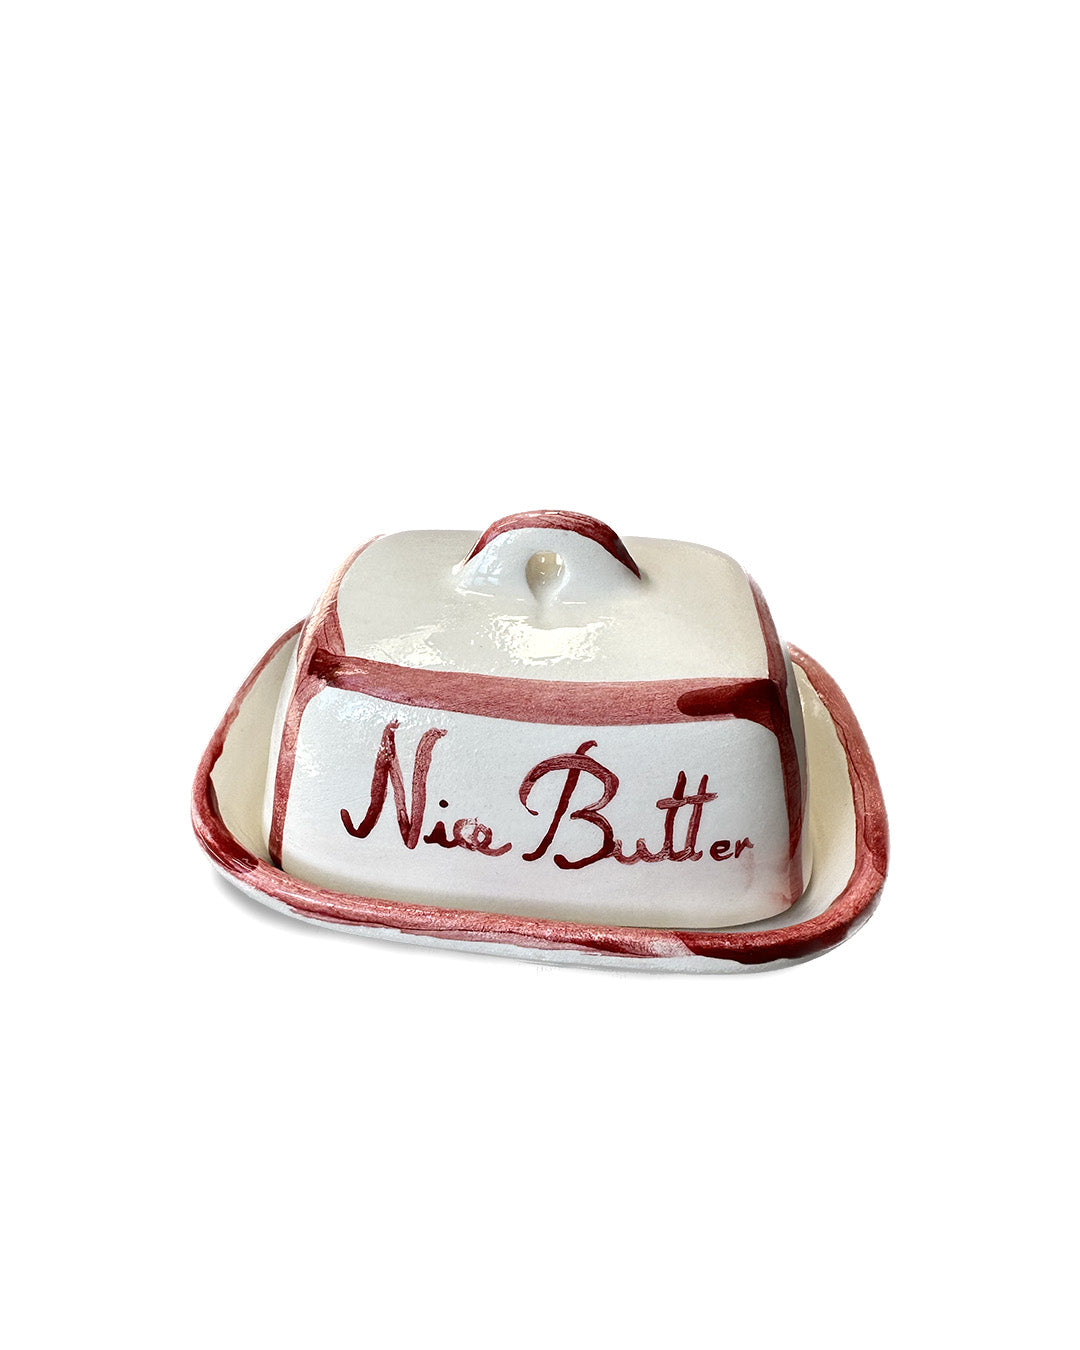 "Nice butt" butter dish